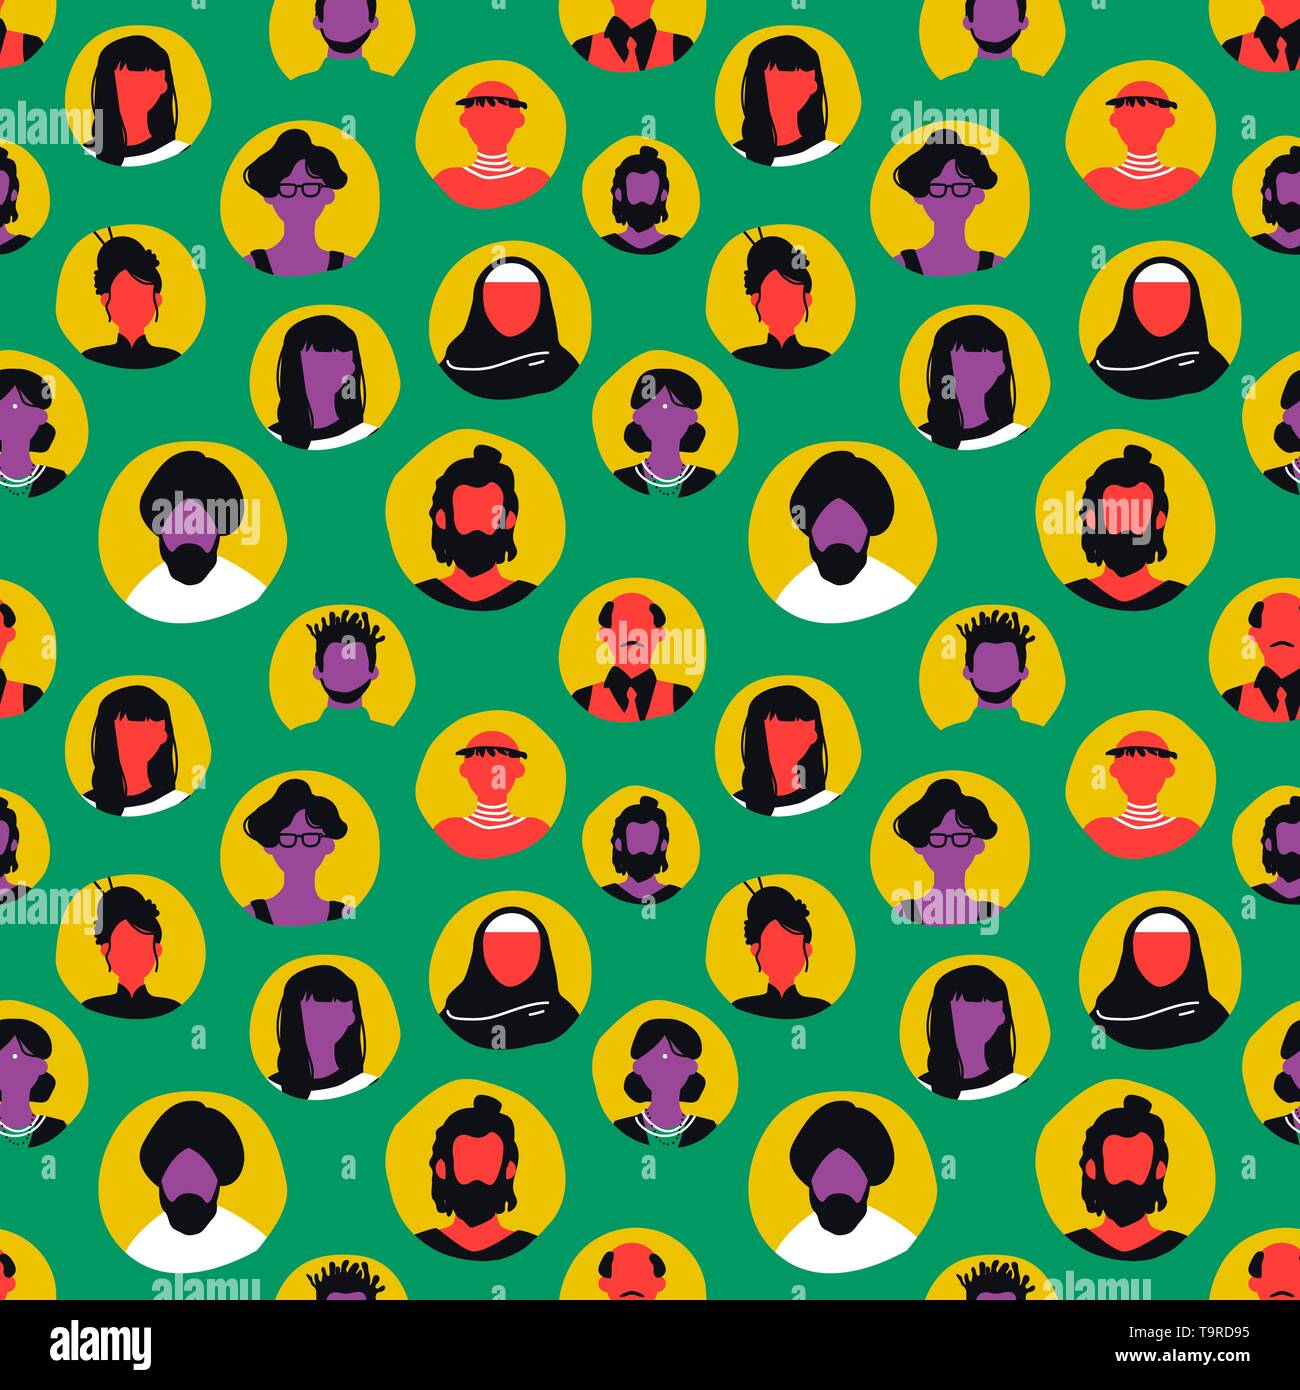 Menschen icons nahtlose Muster in bunten Retro Style. Diverse Mann und Frau avatar Hintergrund für die internationale Gemeinschaft oder Internet Kommunikation c Stock Vektor